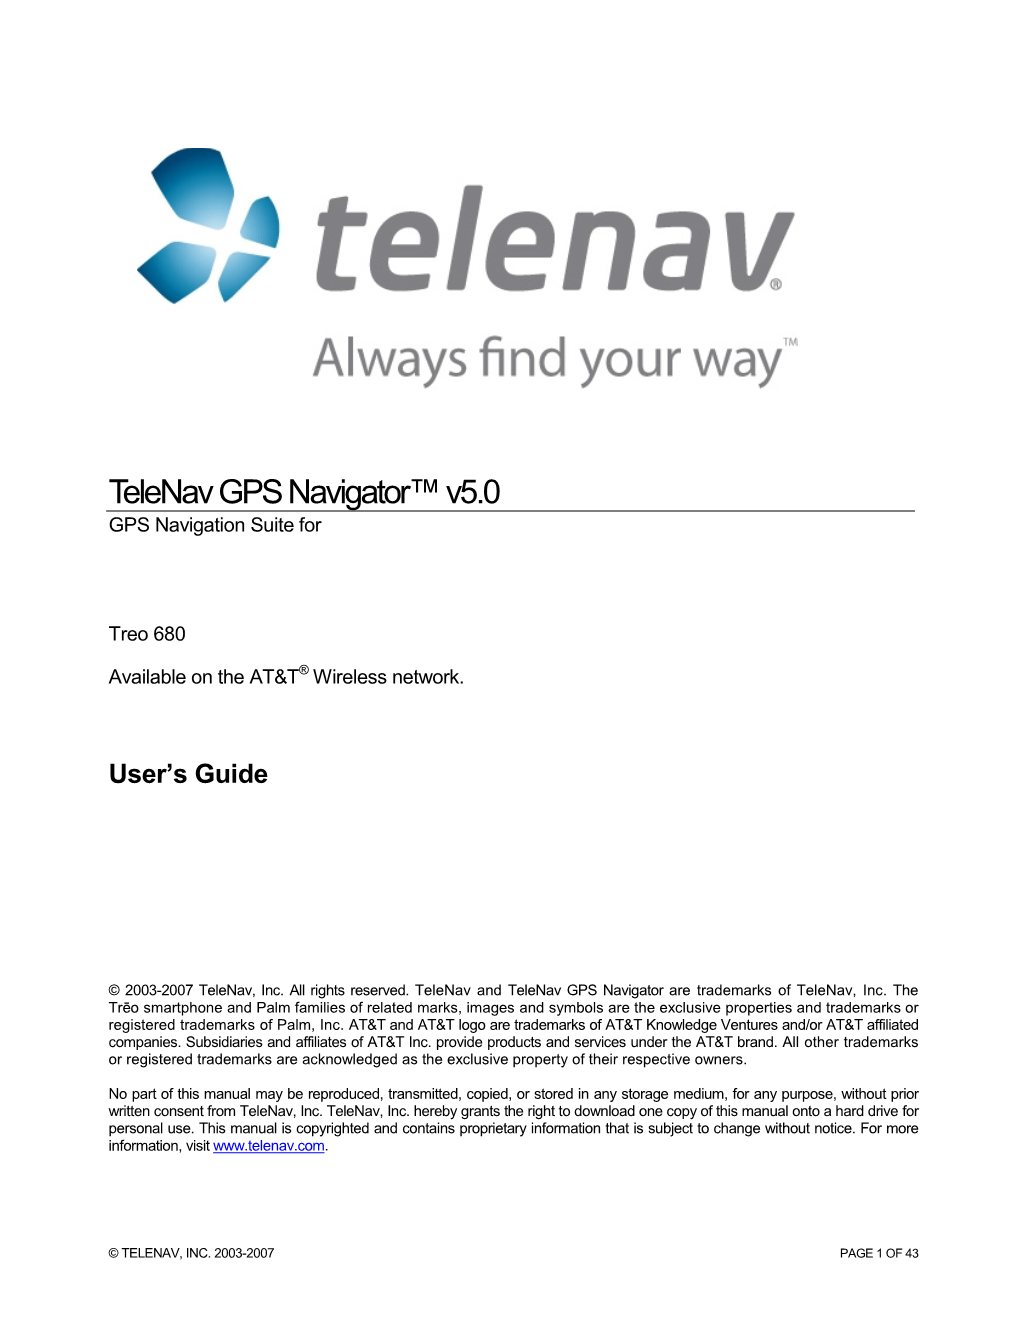 Telenav V5.0 User's Guide